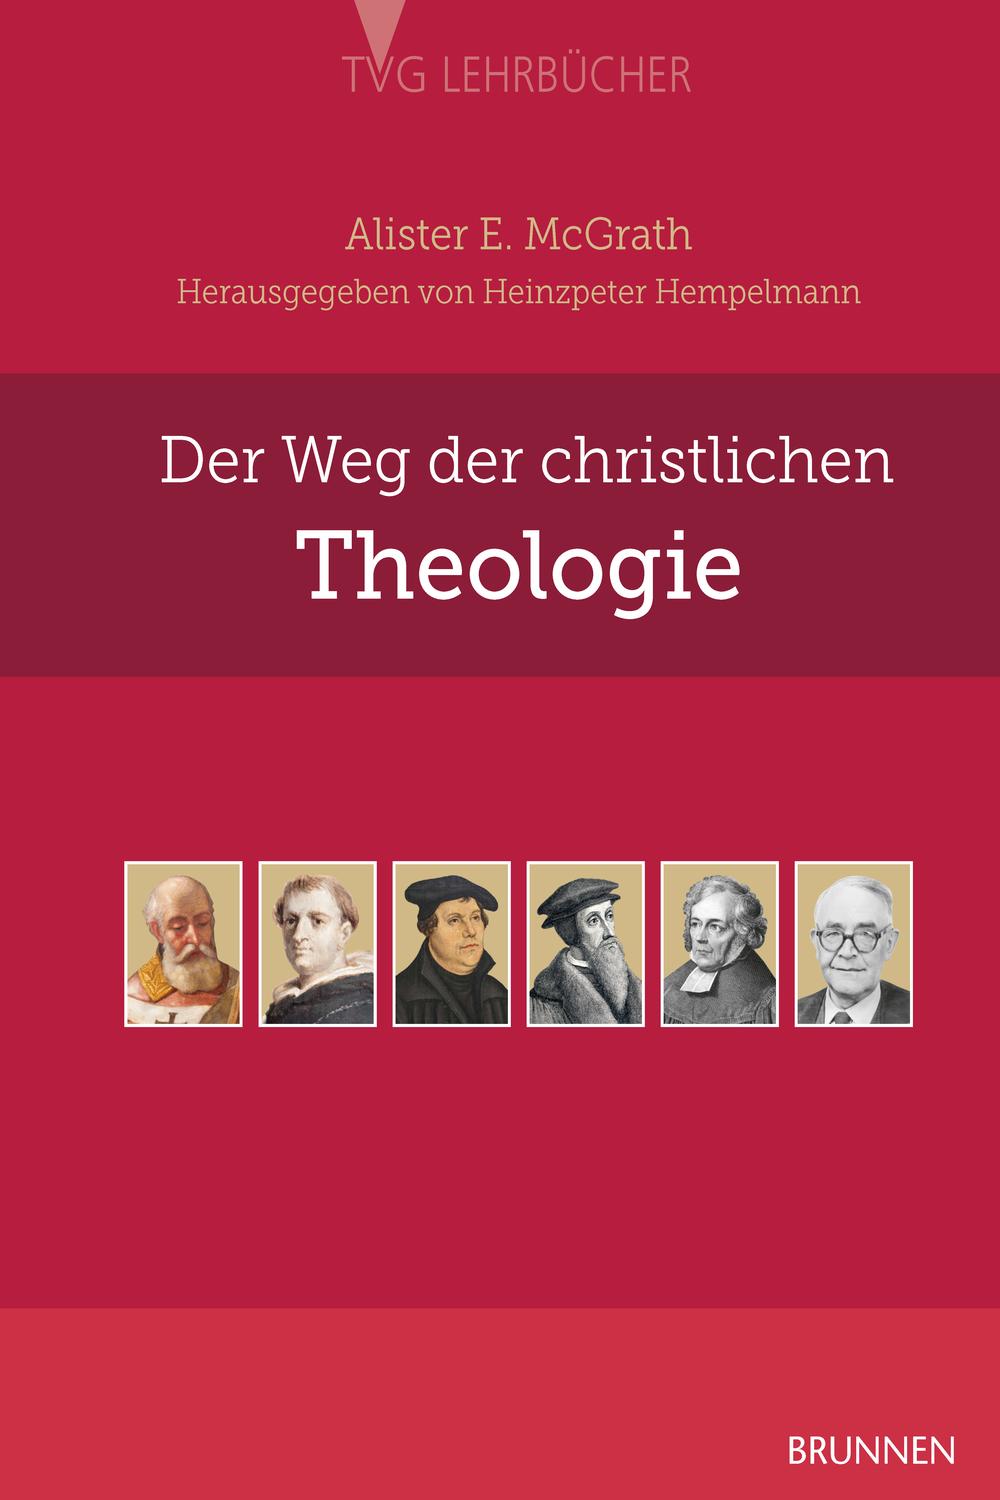 Der Weg der christlichen Theologie - Alister McGrath